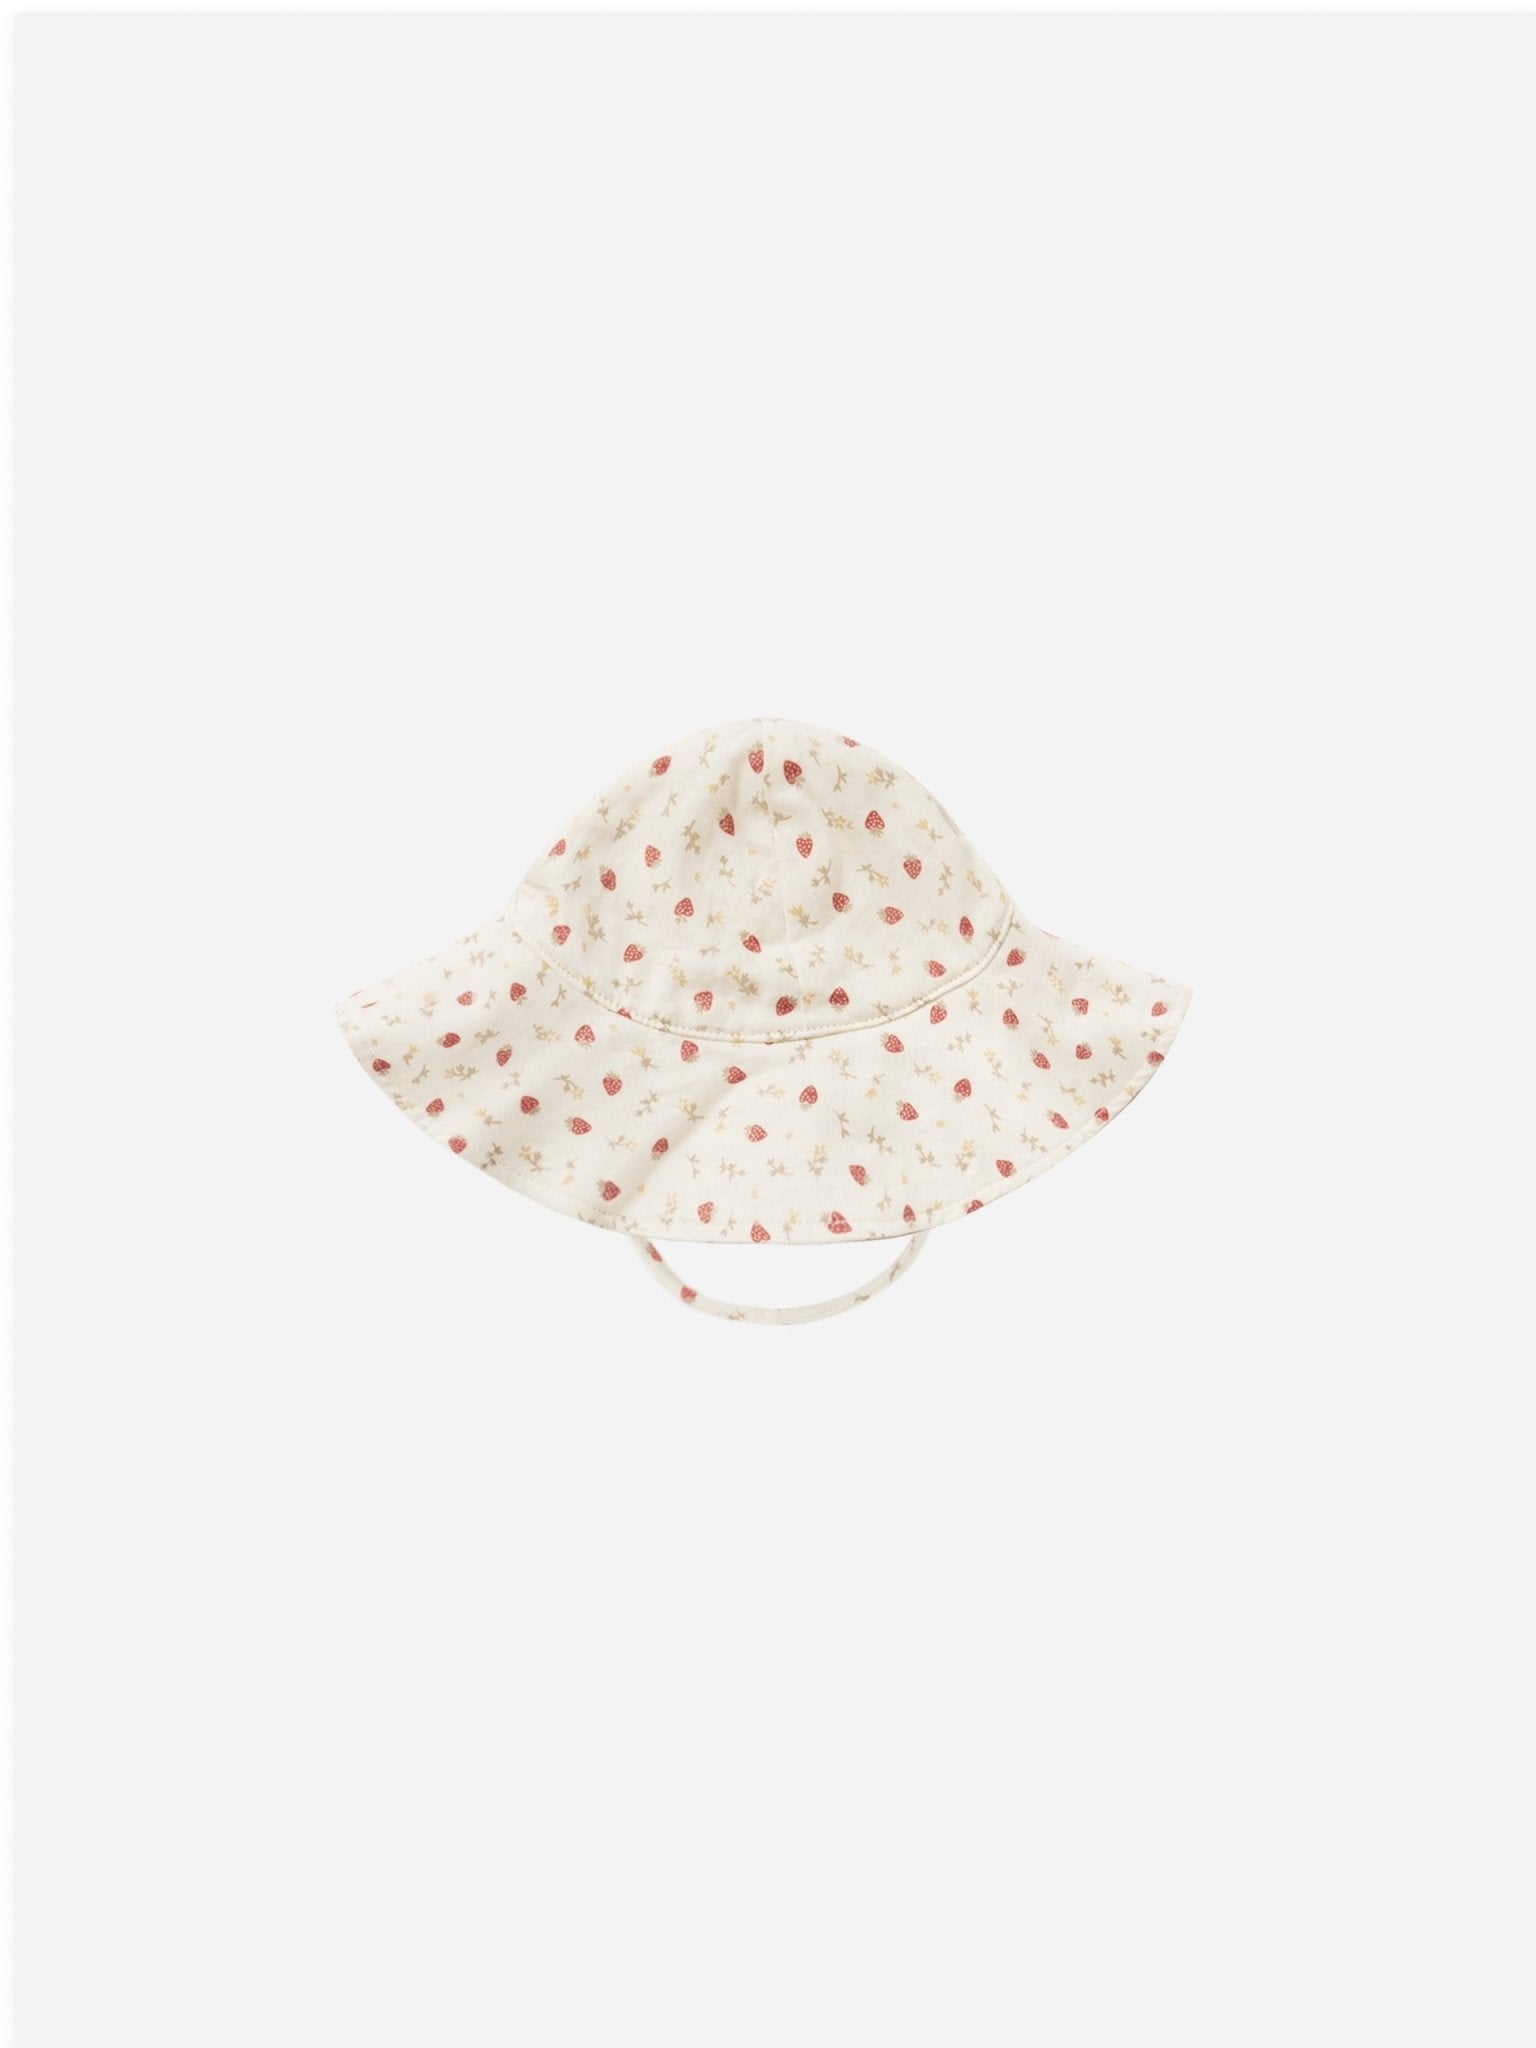 Floppy Sun Hat || Strawberry Fields - Rylee + Cru Canada